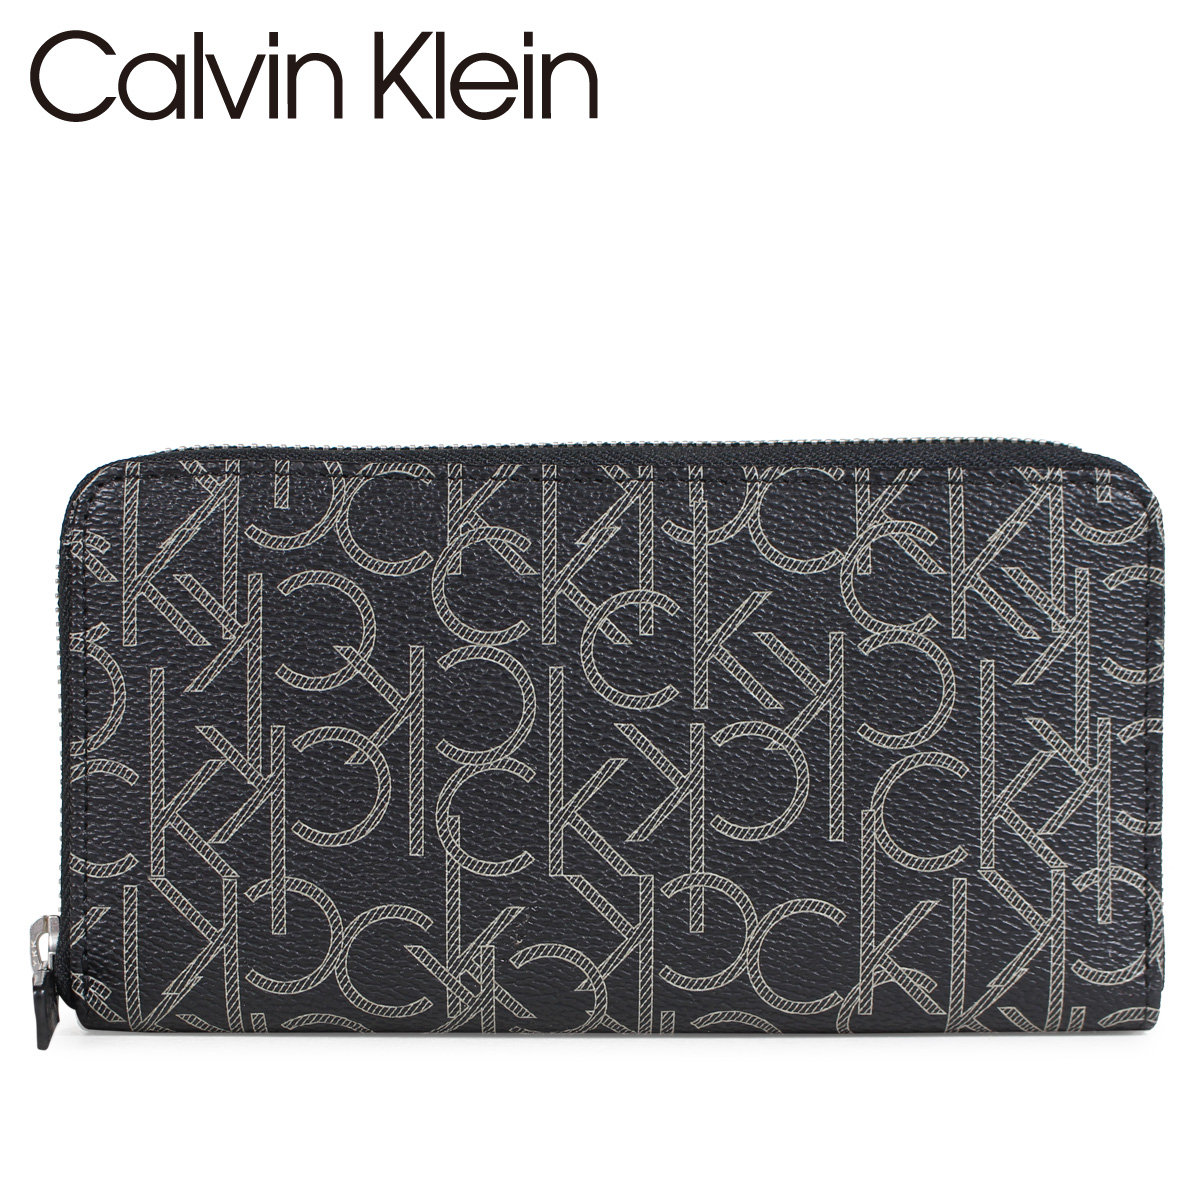 calvin klein zip wallet